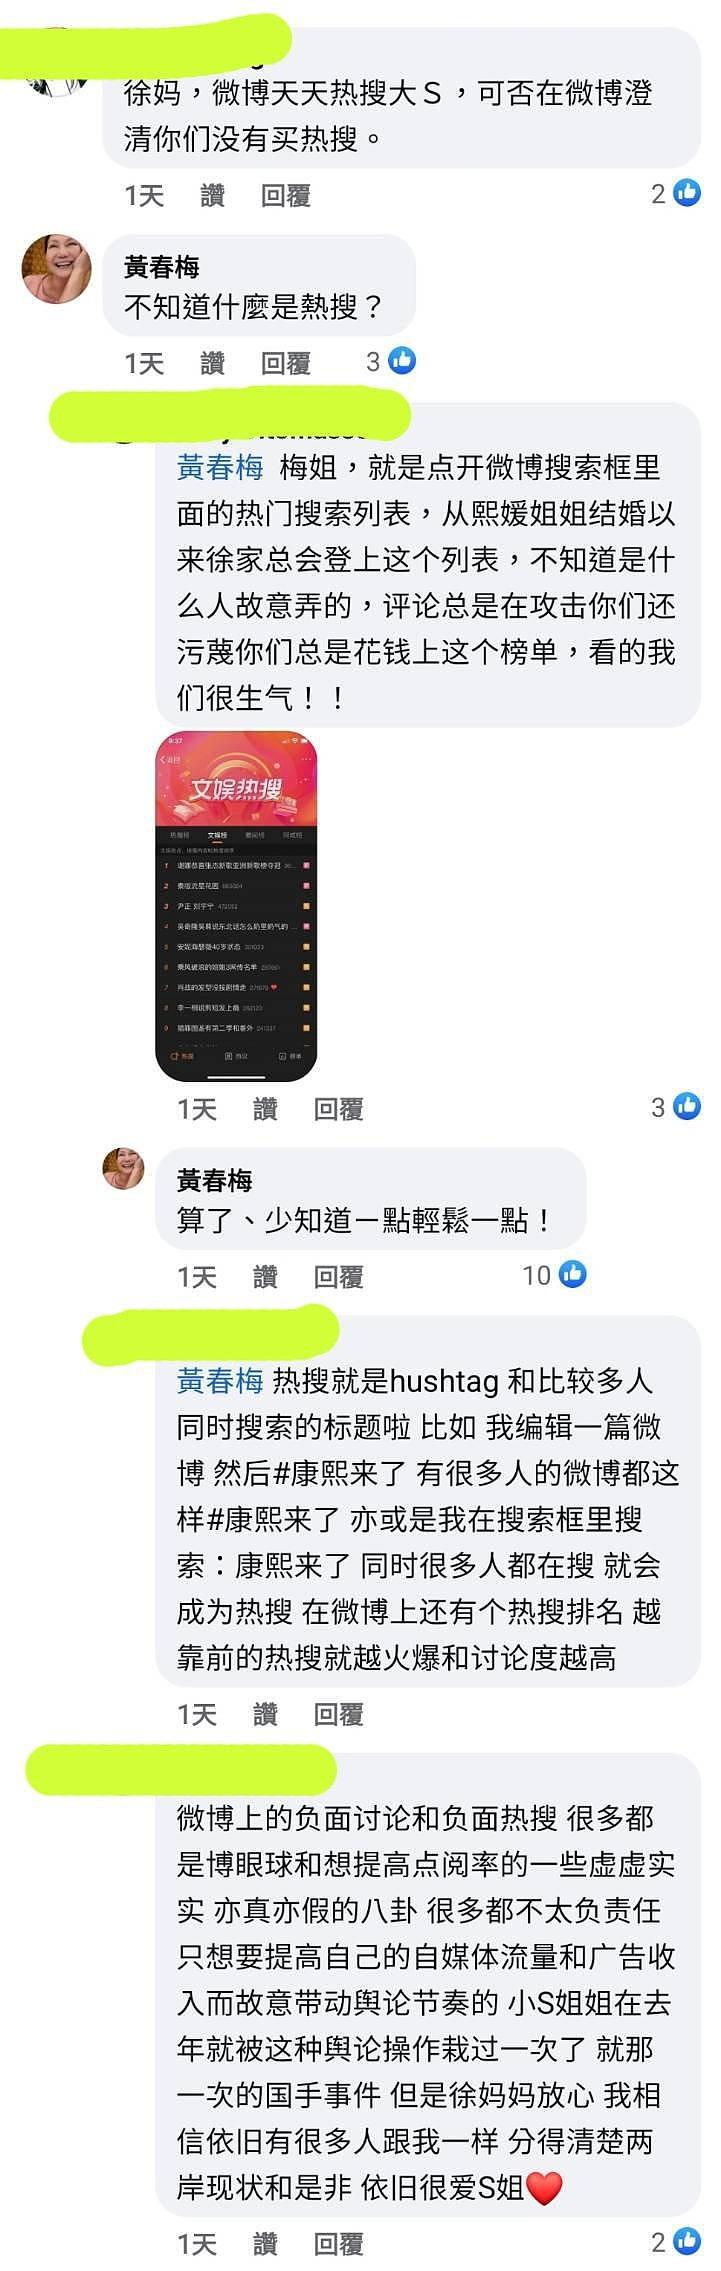 中国网友亲自询问徐妈妈有关买热搜一事。 （取材自微博）